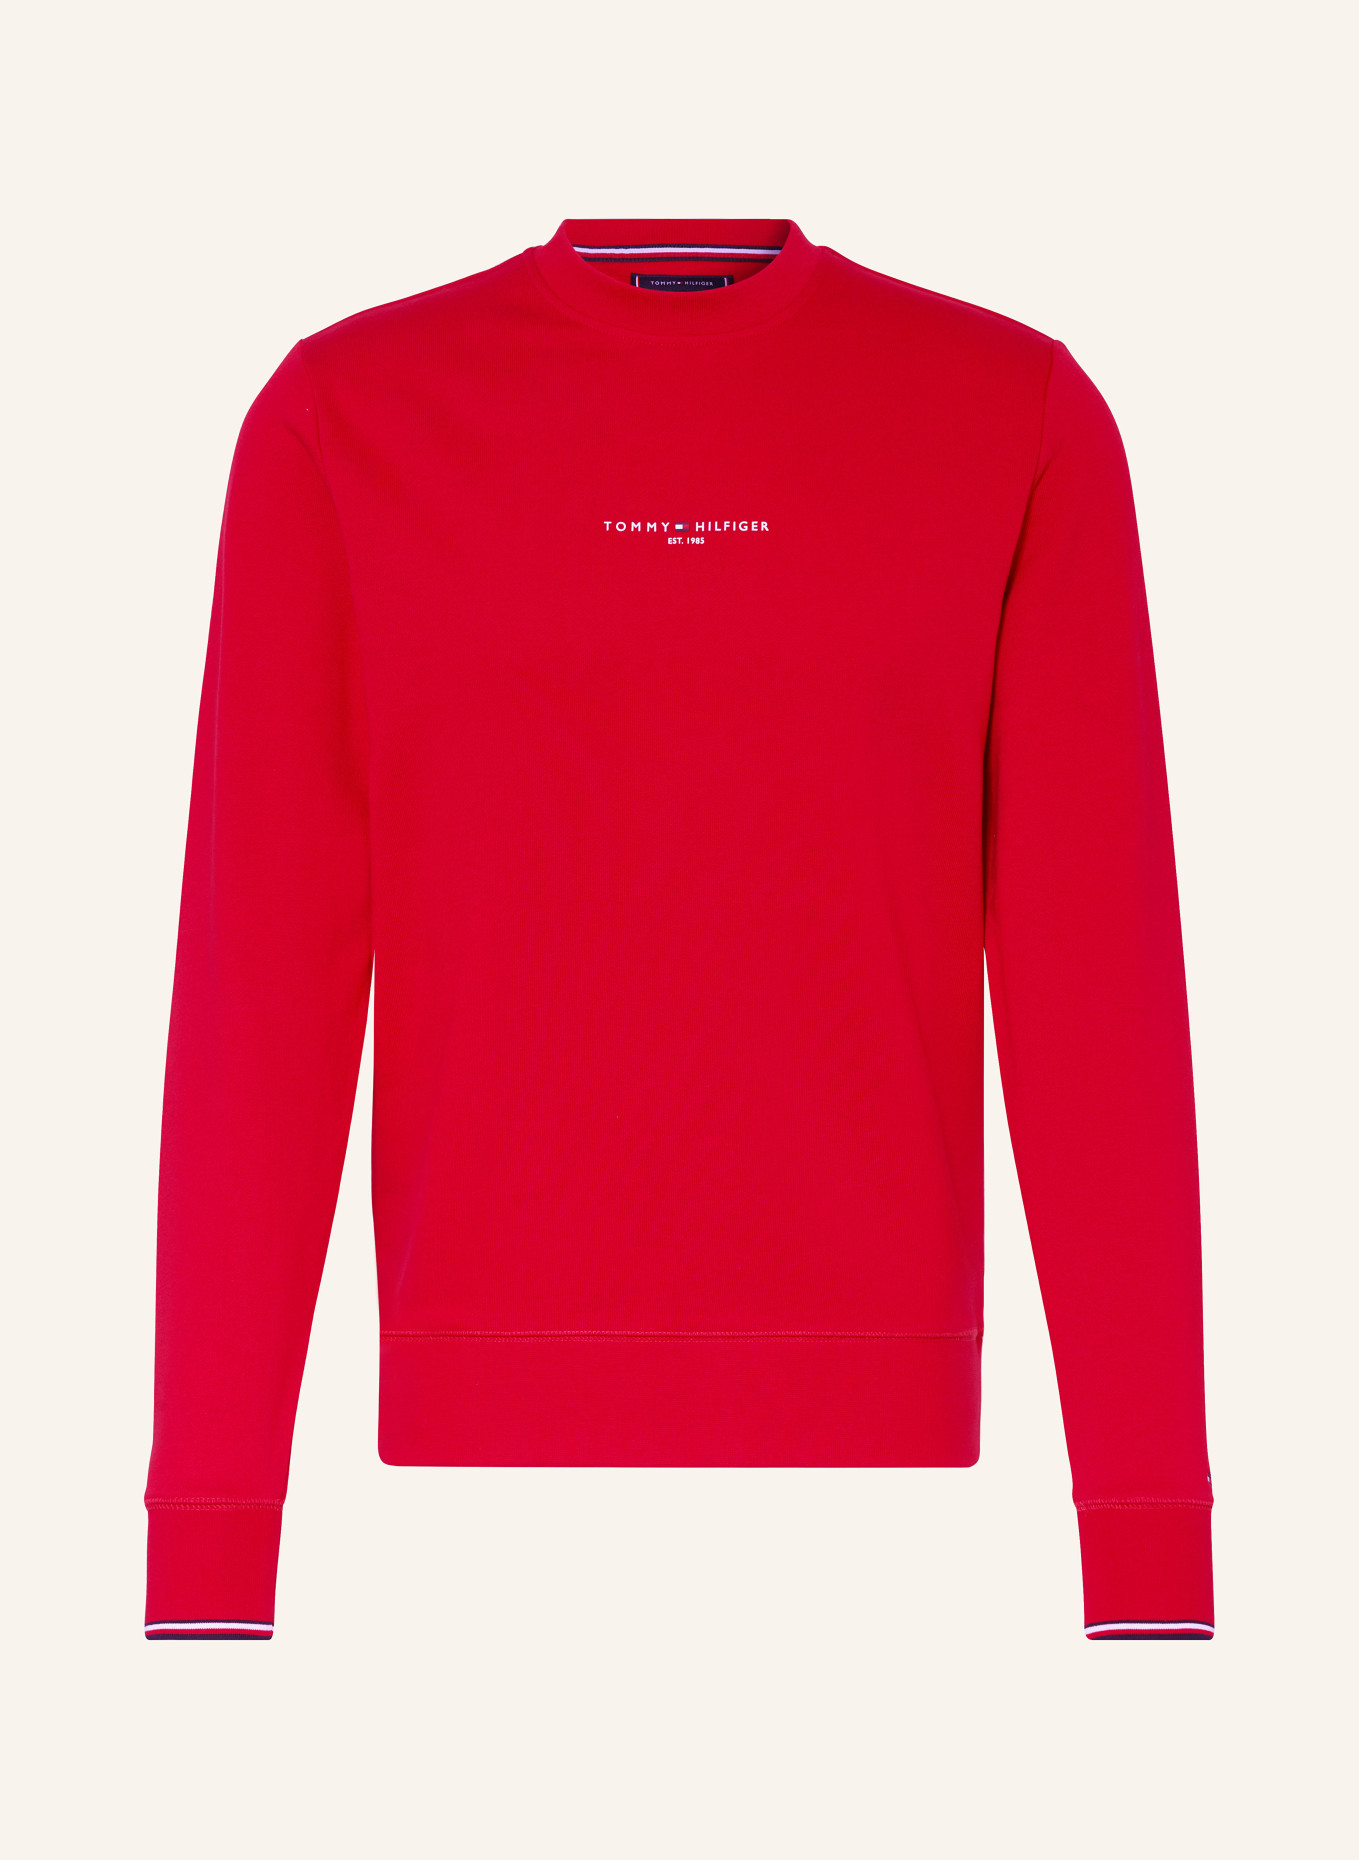 TOMMY HILFIGER Sweatshirt, Color: RED (Image 1)